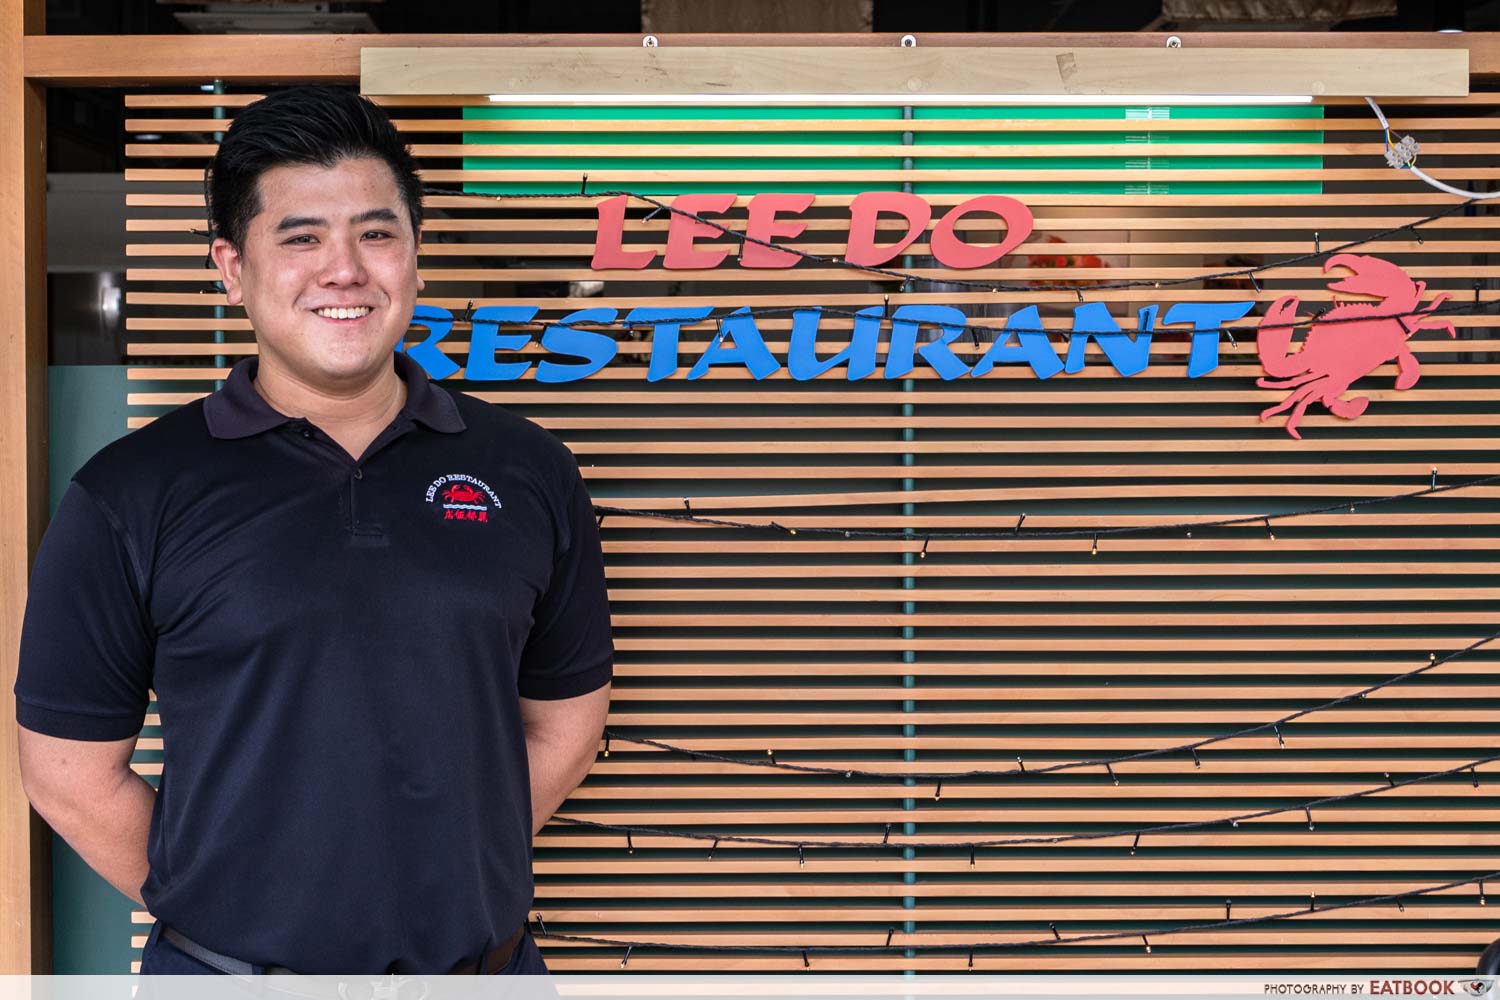 Lee Do Restaurant - store owner